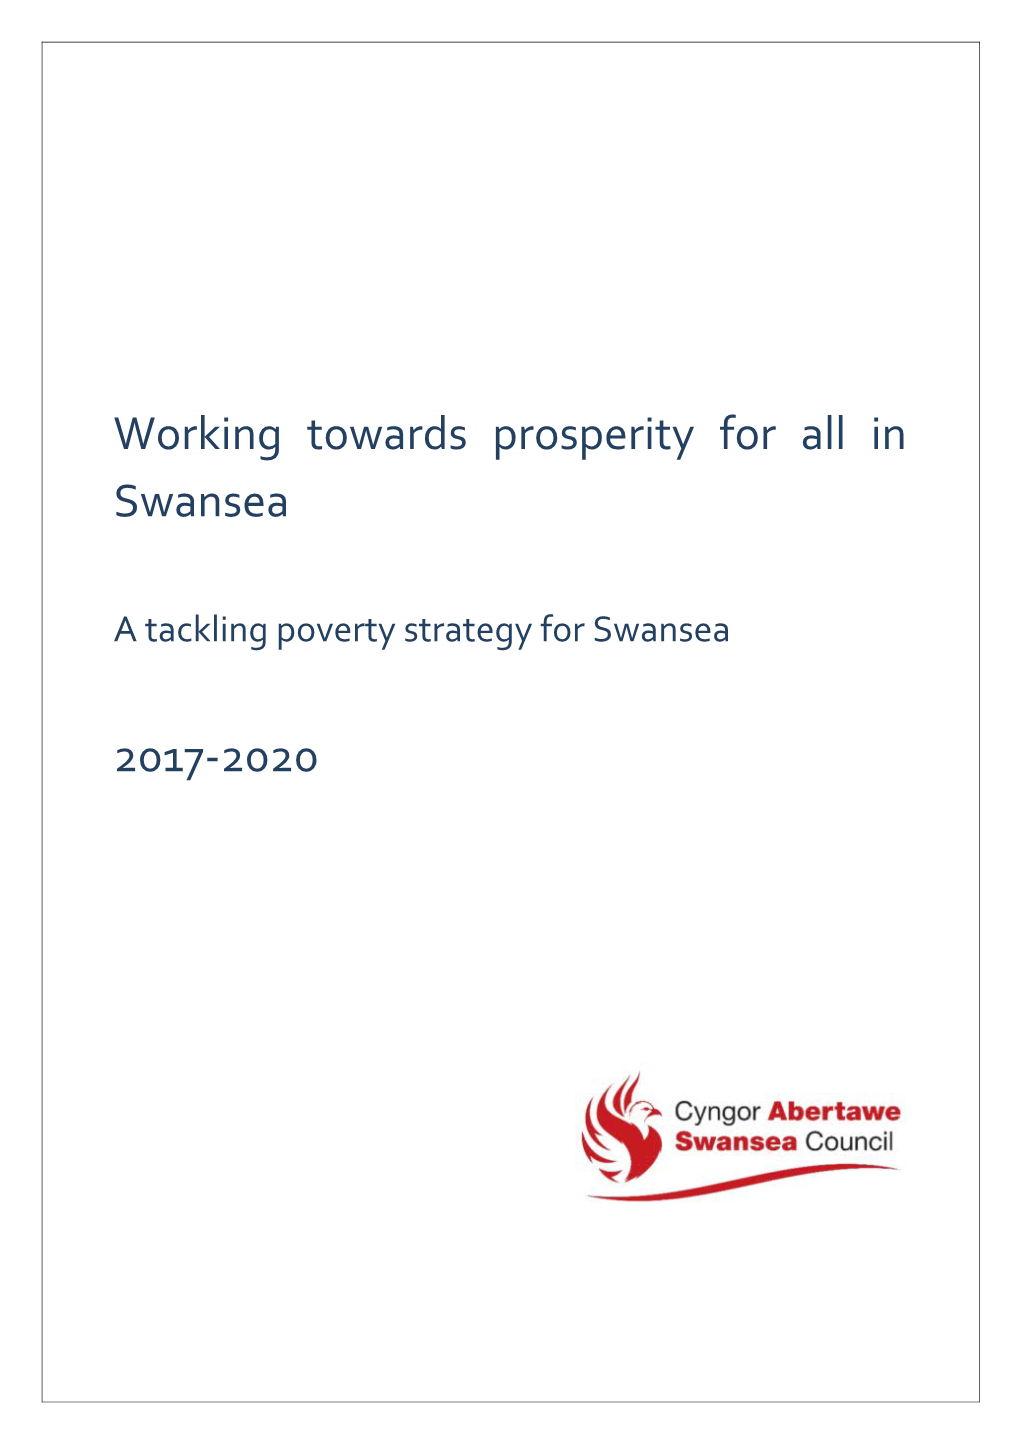 Working Towards Prosperity for All in Swansea